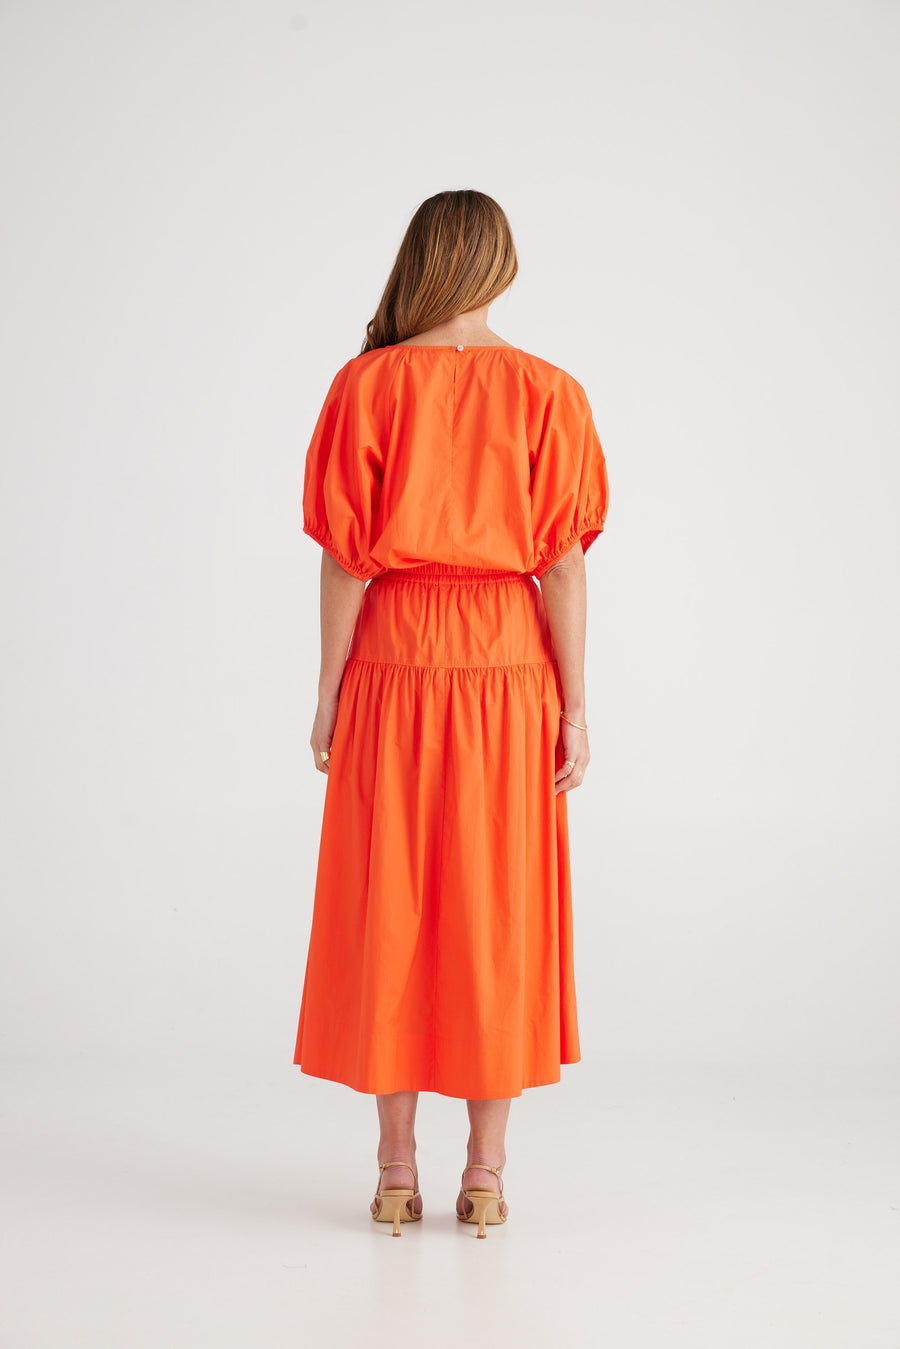 Provence Skirt - Mandarin